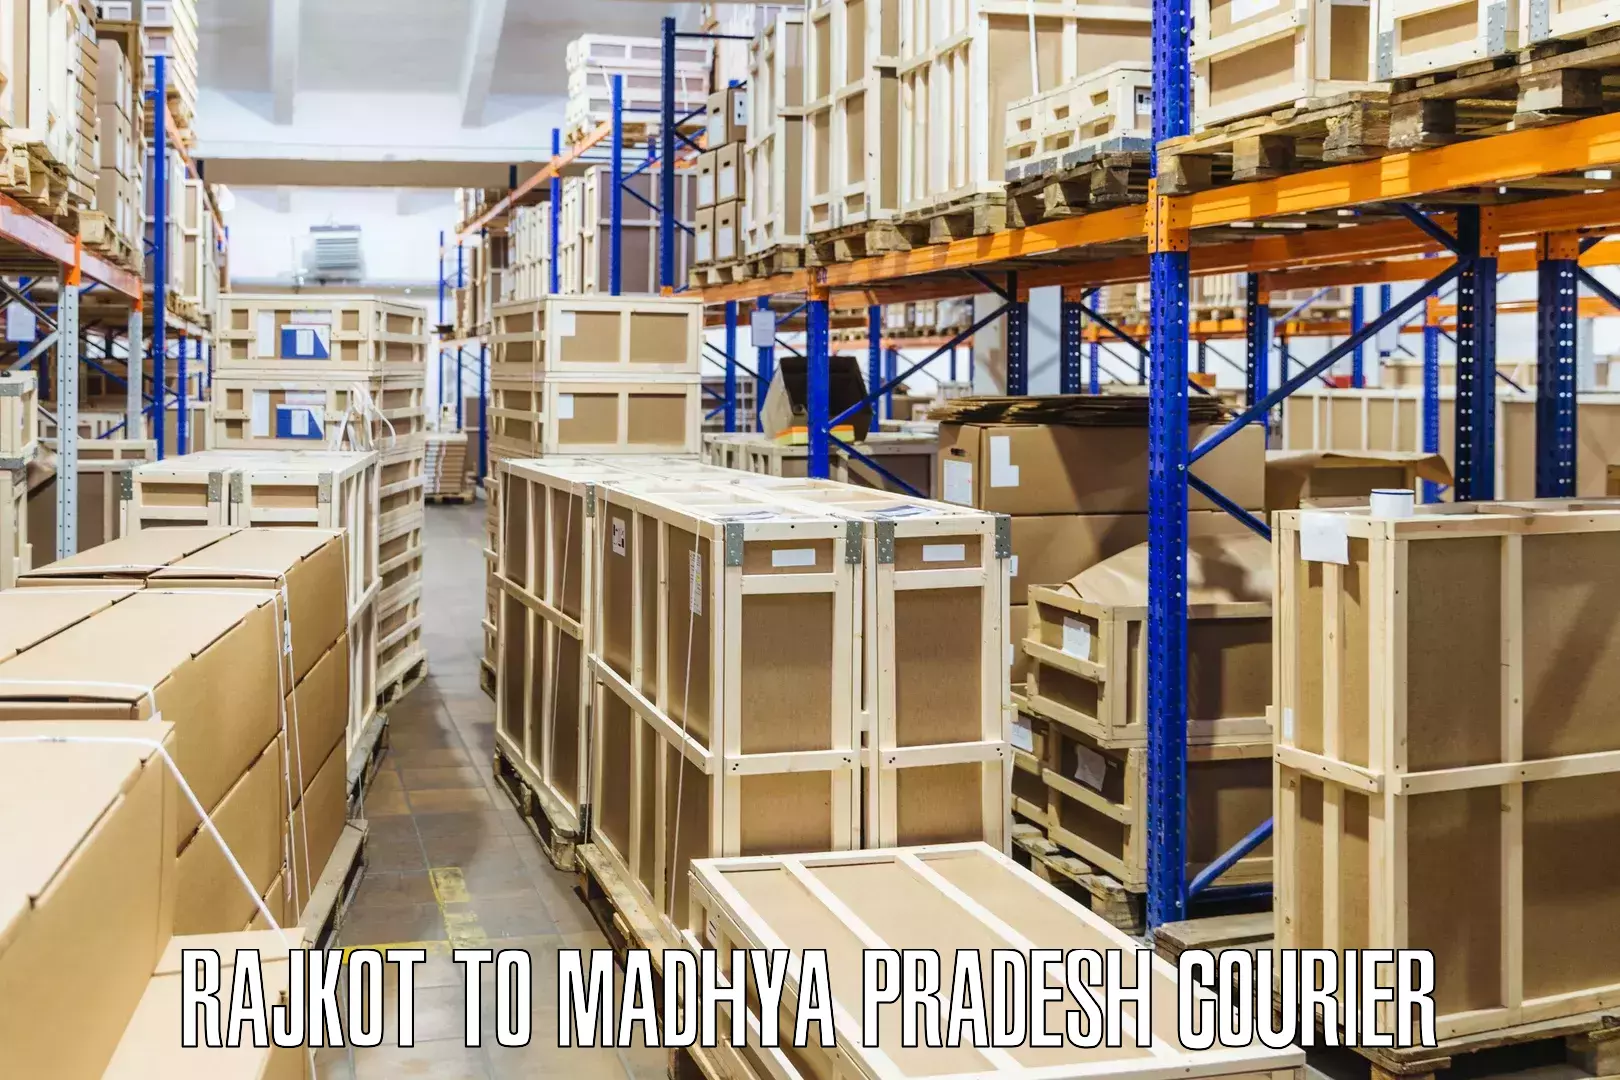 Cost-effective courier options Rajkot to Vijayraghavgarh